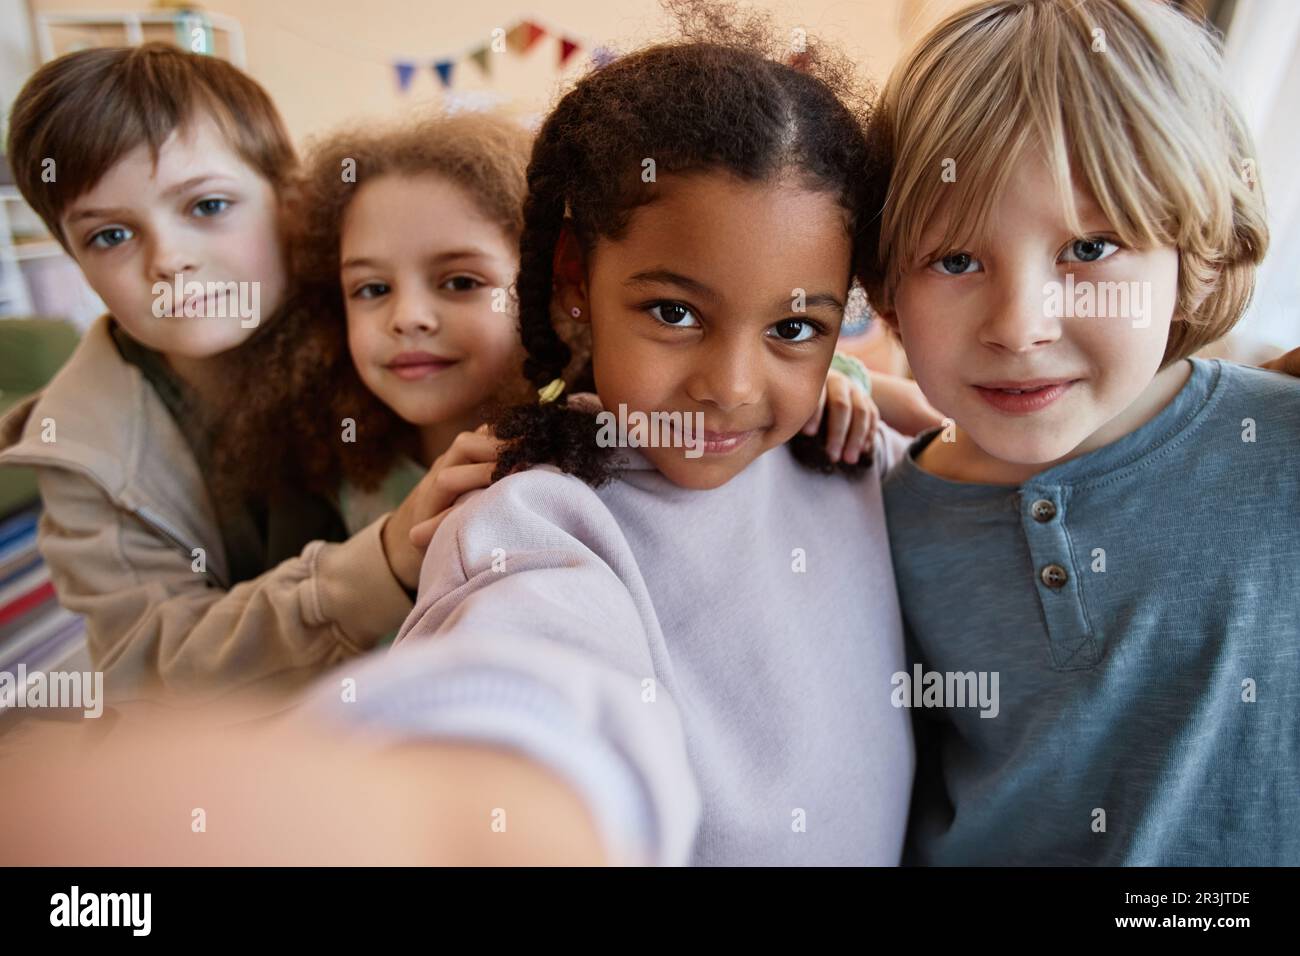 POV vielfältige Gruppe glücklicher Kinder, die zusammen Selfie-Fotos machen und vor der Kamera lächeln Stockfoto